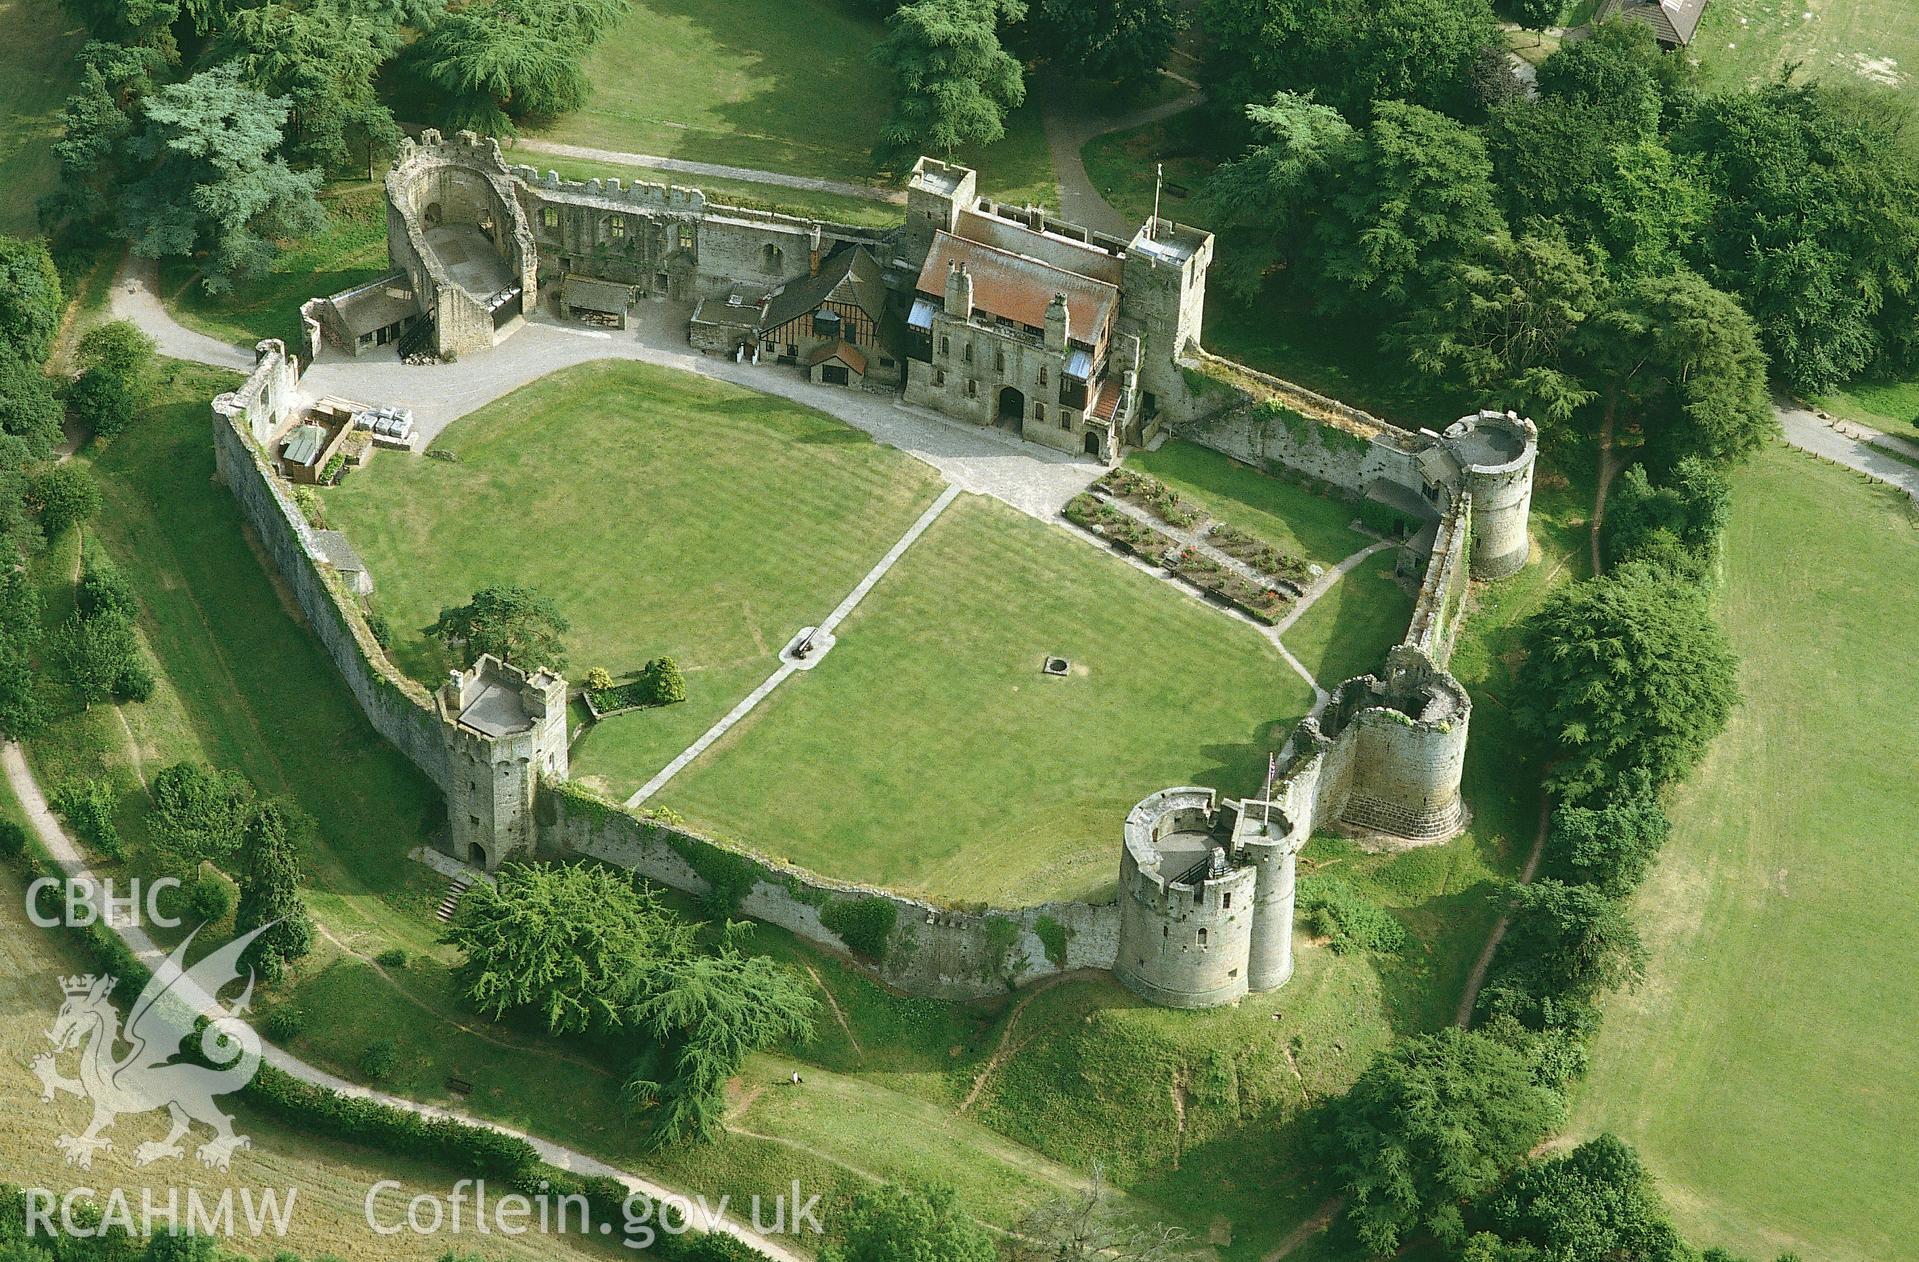 RCAHMW colour slide oblique aerial photograph of Caldicot Castle, Caldicot, taken by C.R. Musson, 18/07/94